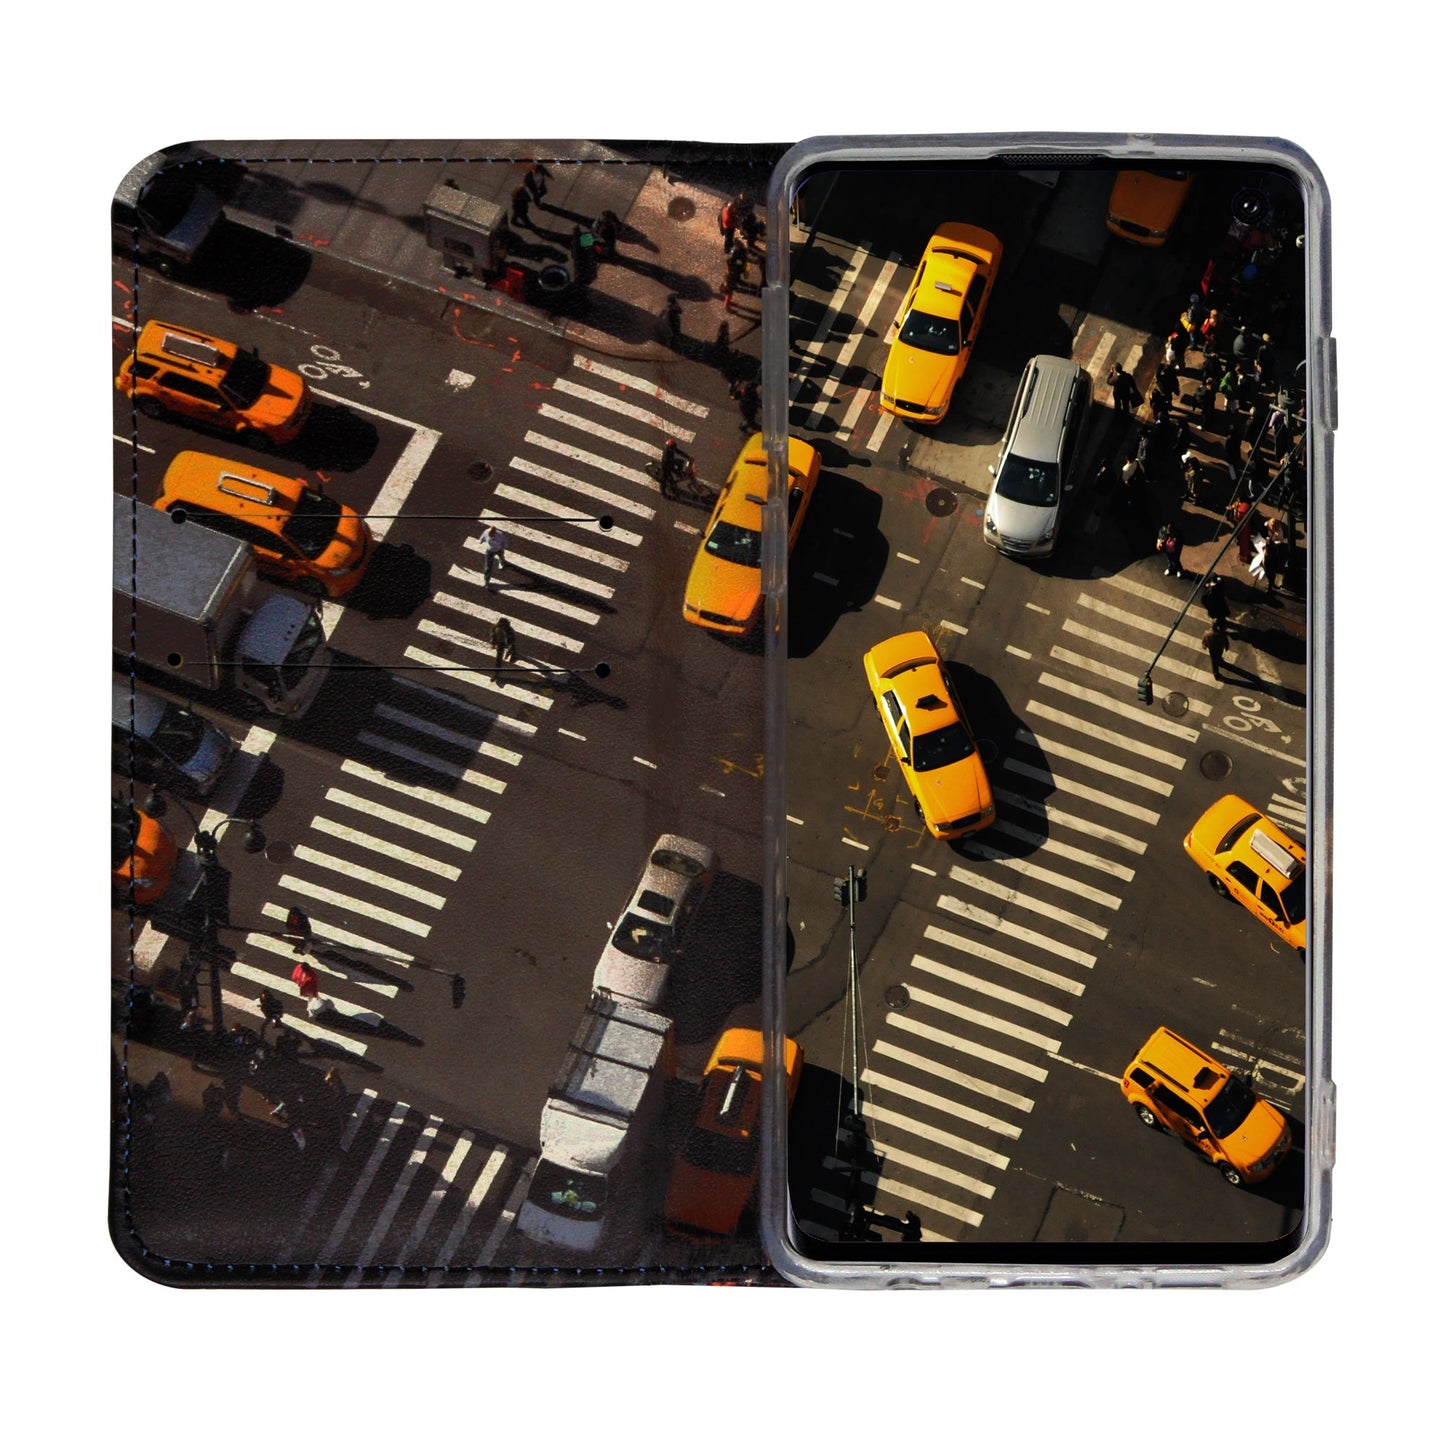 Coque panoramique New York City pour Samsung Galaxy S9